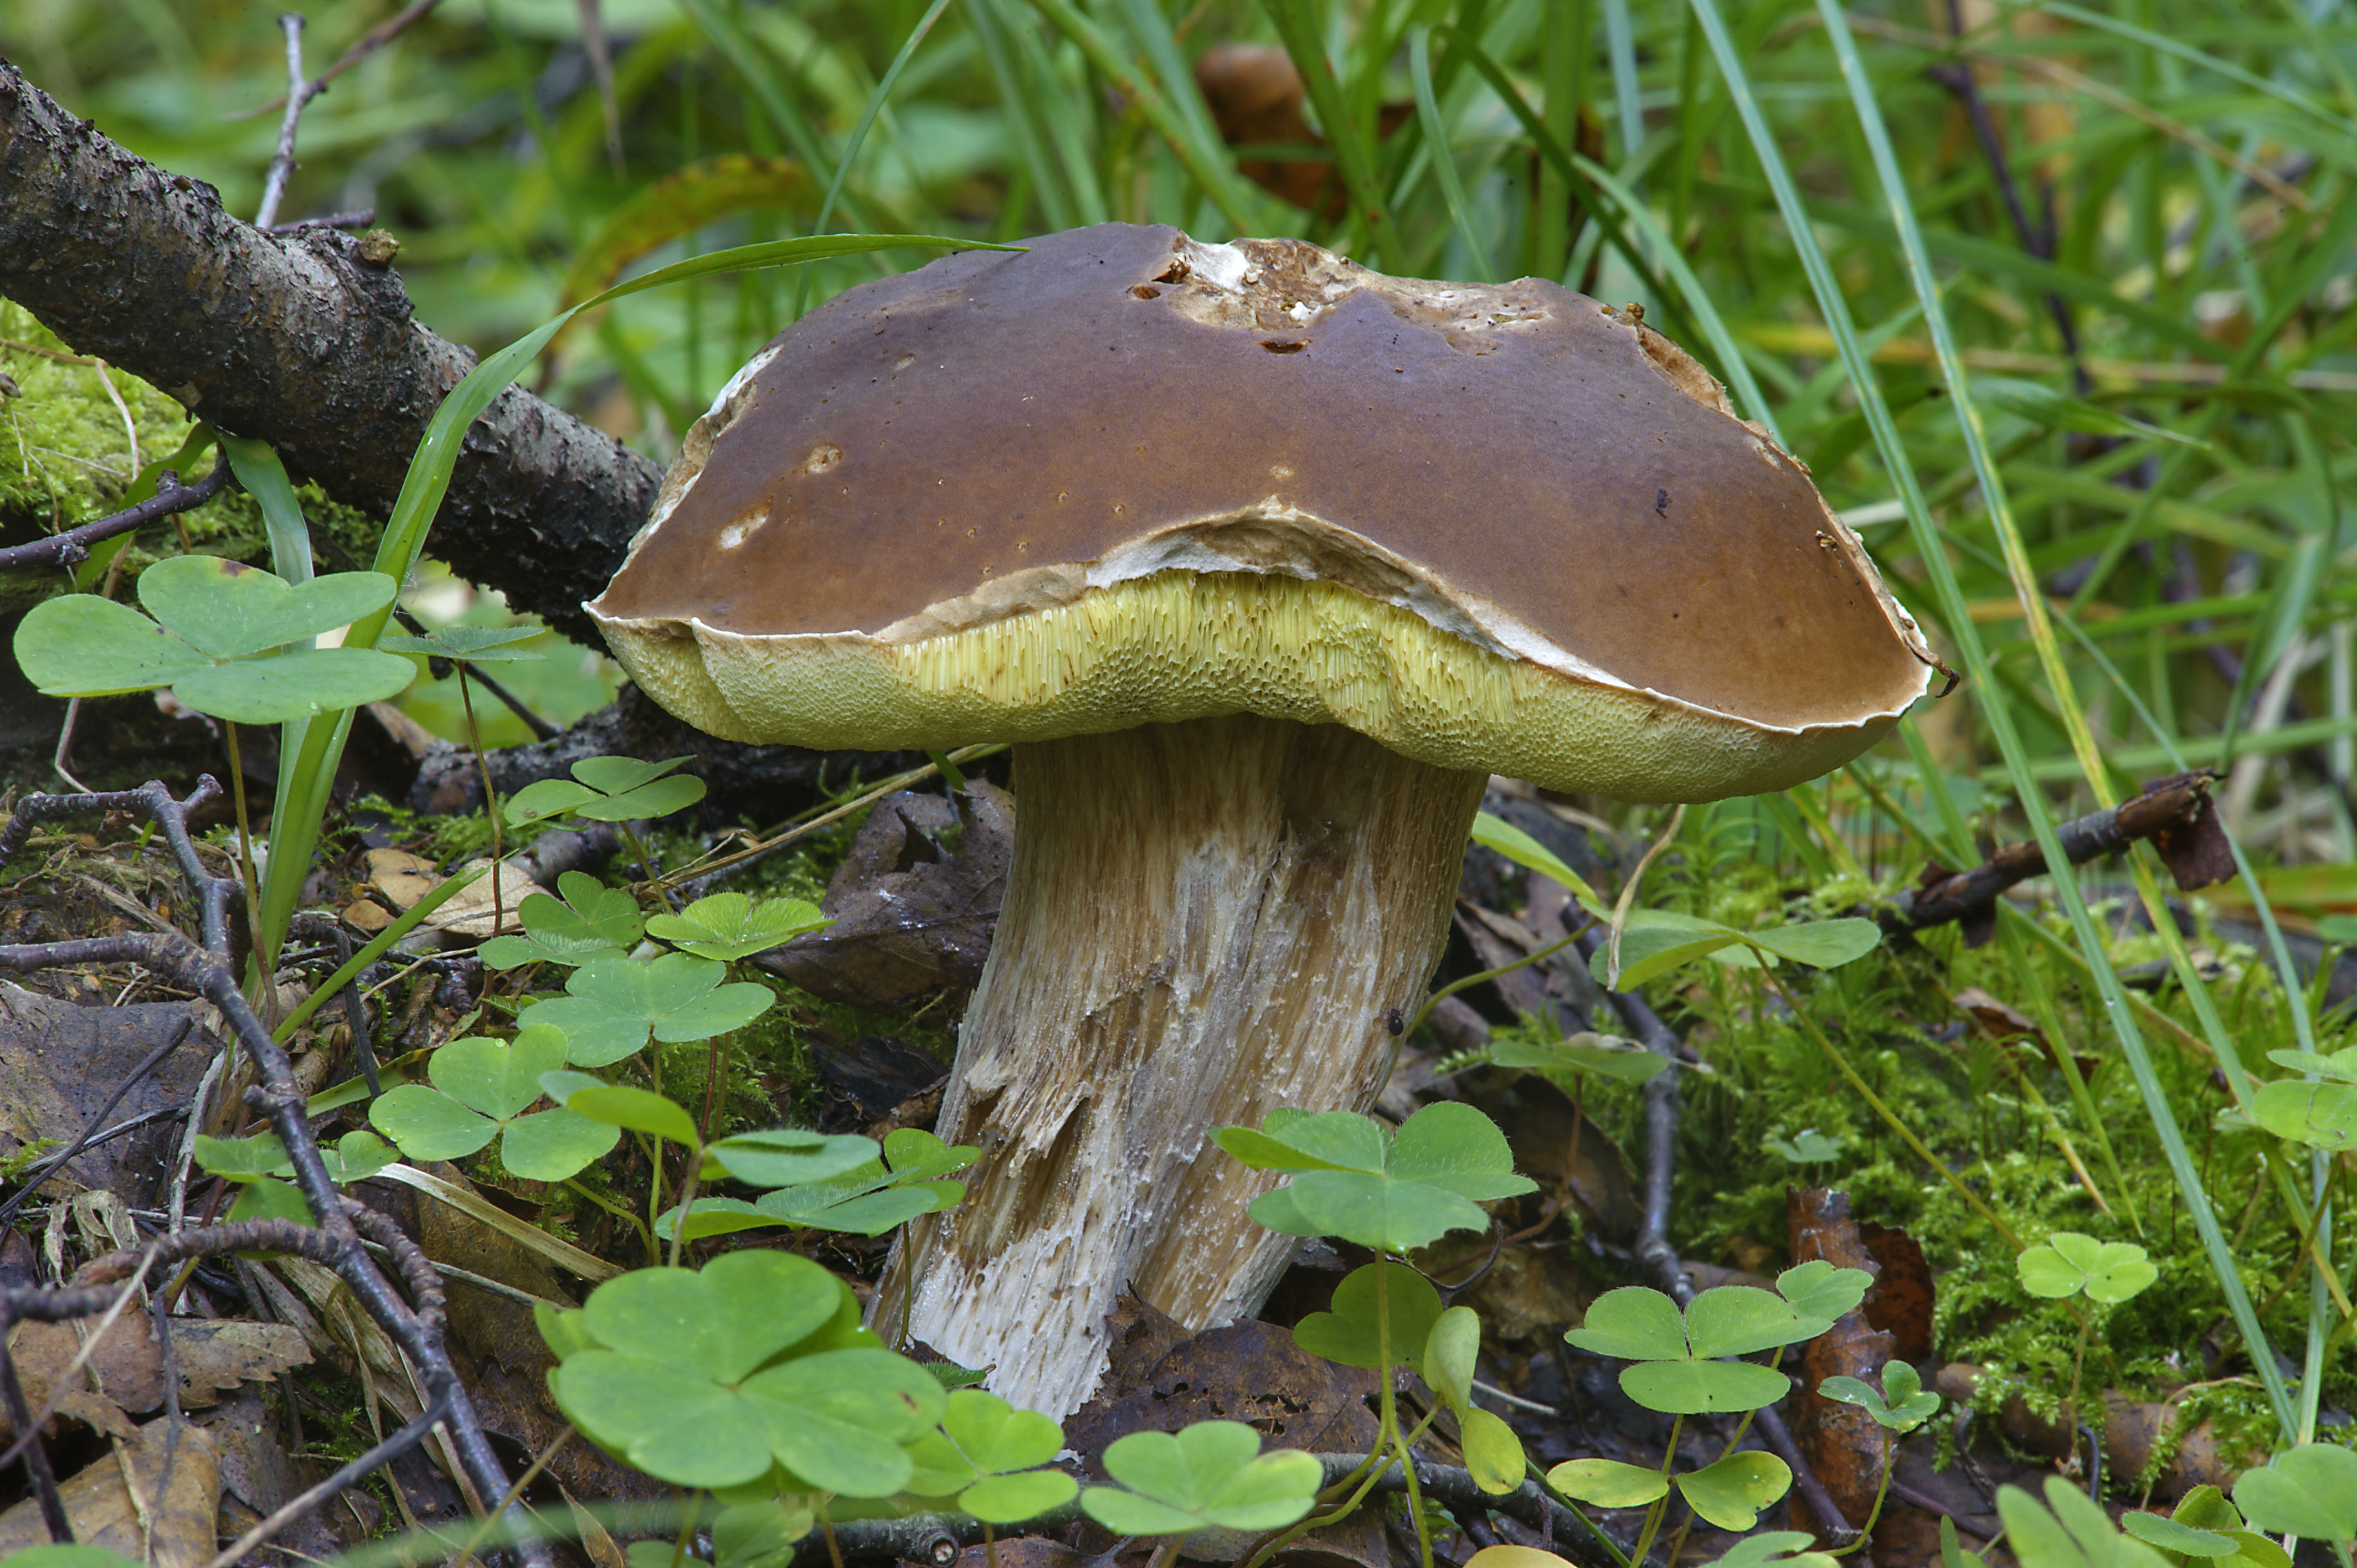 Белый гриб – король грибного царства - грибы собираем